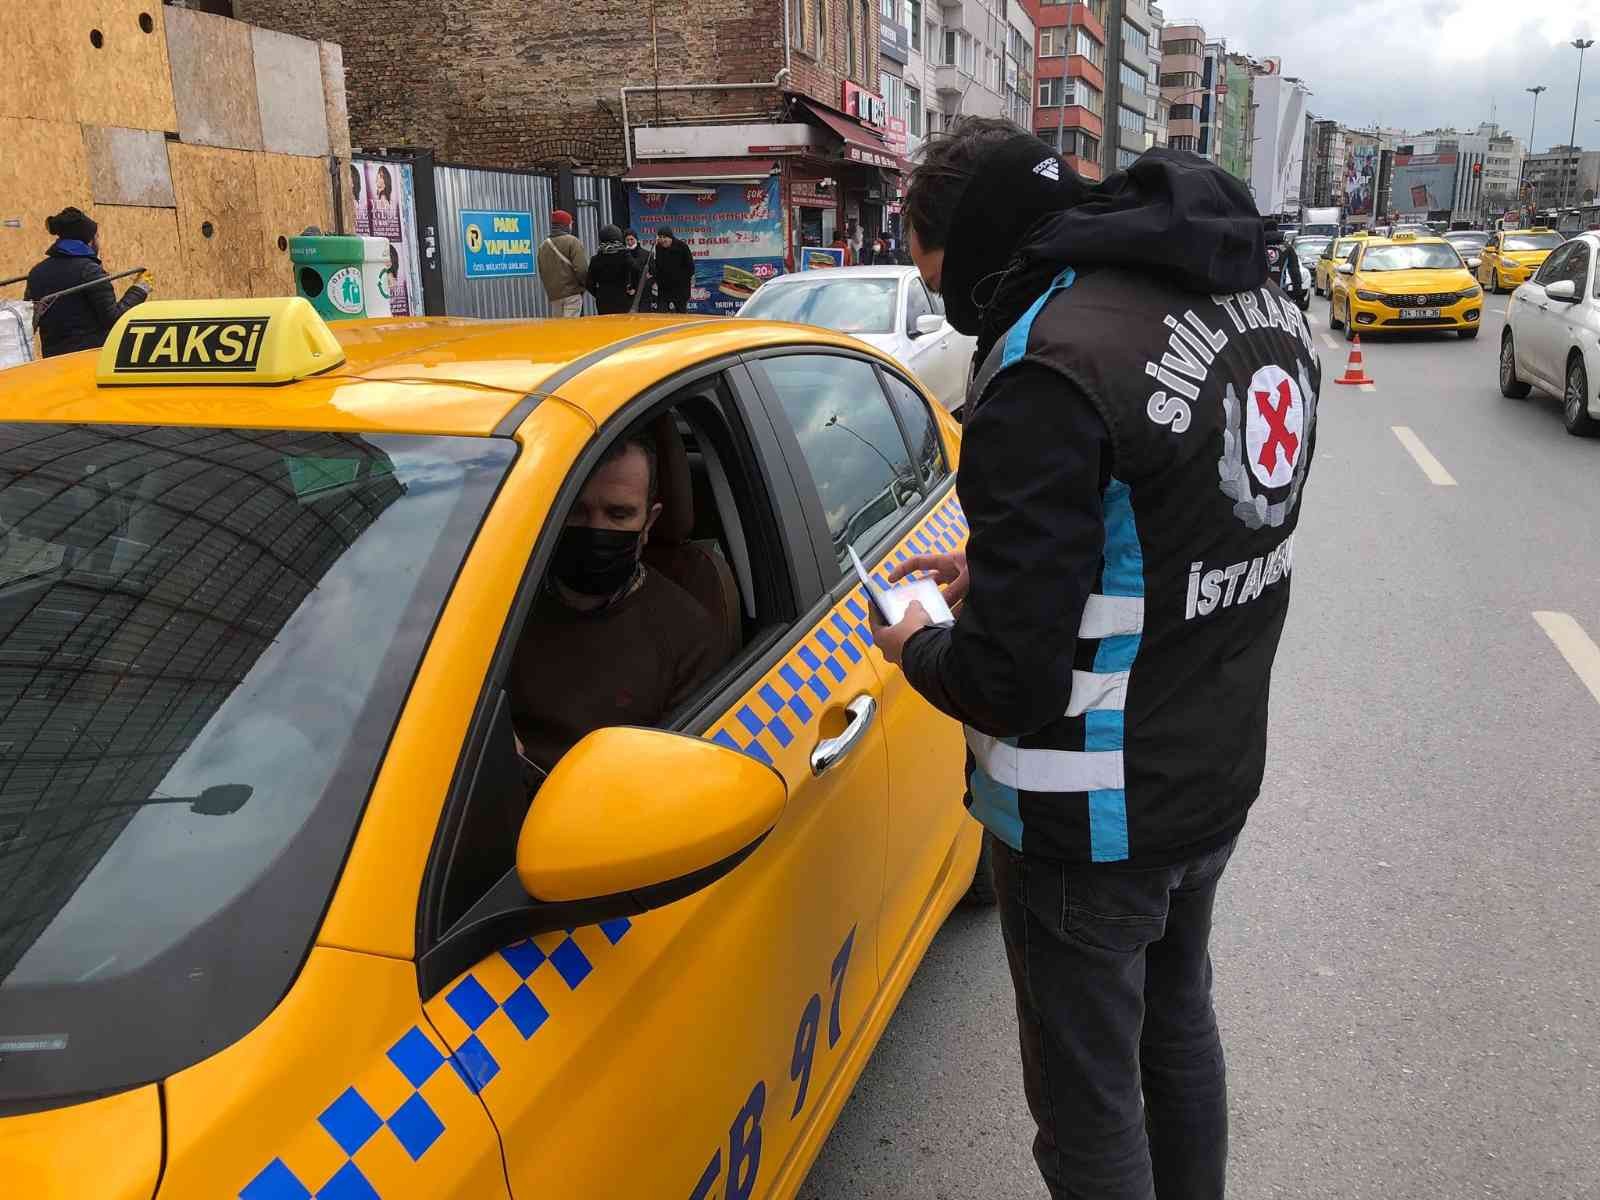 Kadıköy’de trafik polis ekipleri, ticari taksilere yönelik denetim yaptı. Denetimde emniyet kemeri takmadığı tespit edilen 8 taksi sürücüsüne ...